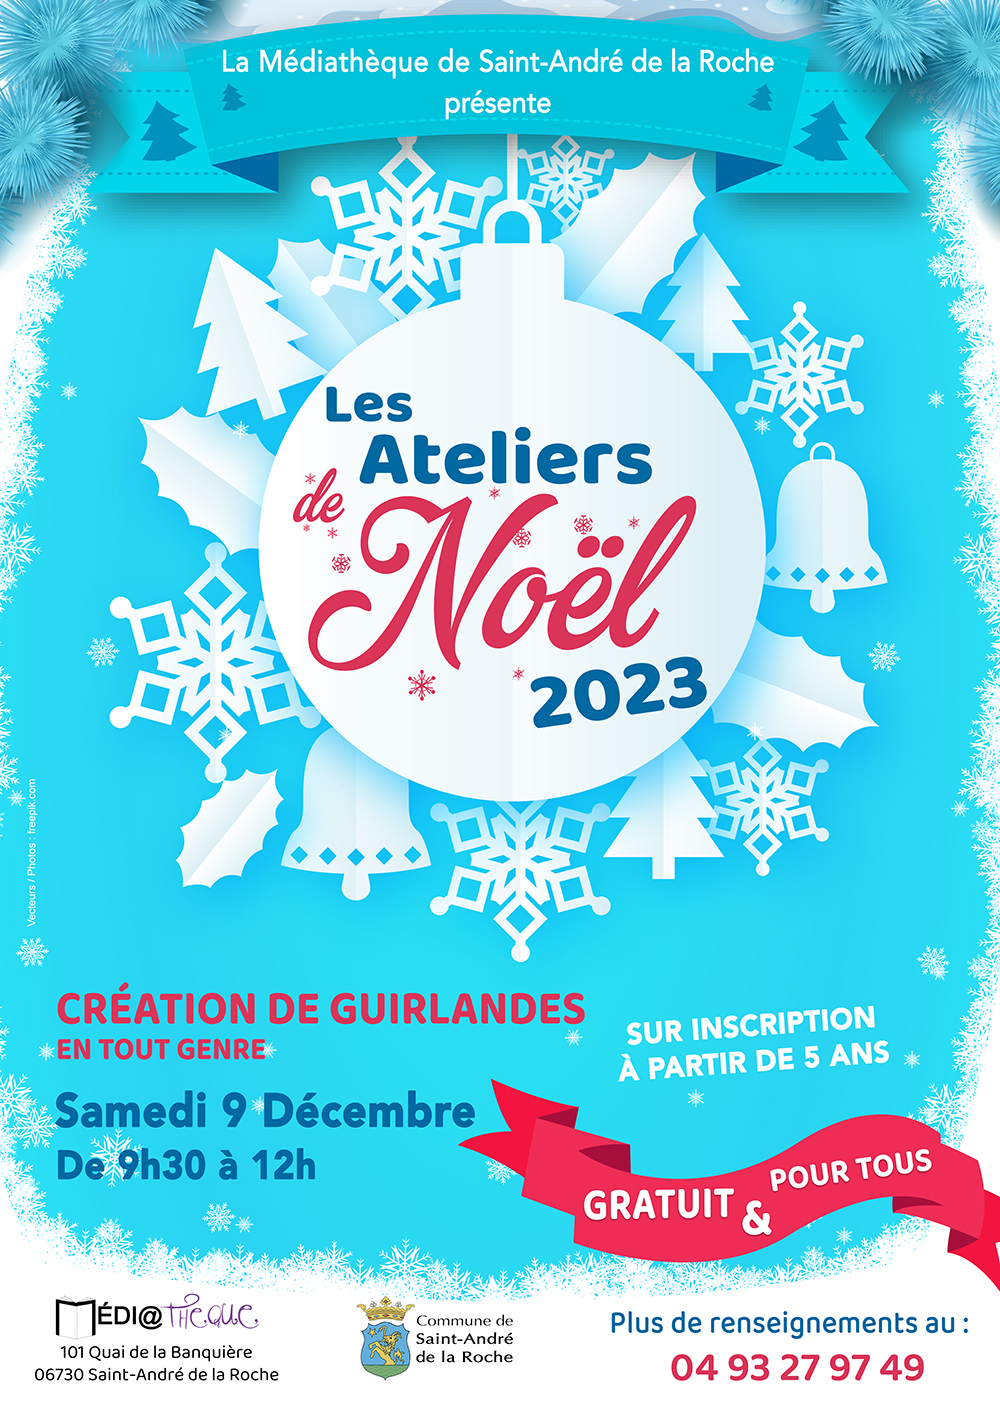 ateliers mediatheque - noel 2023